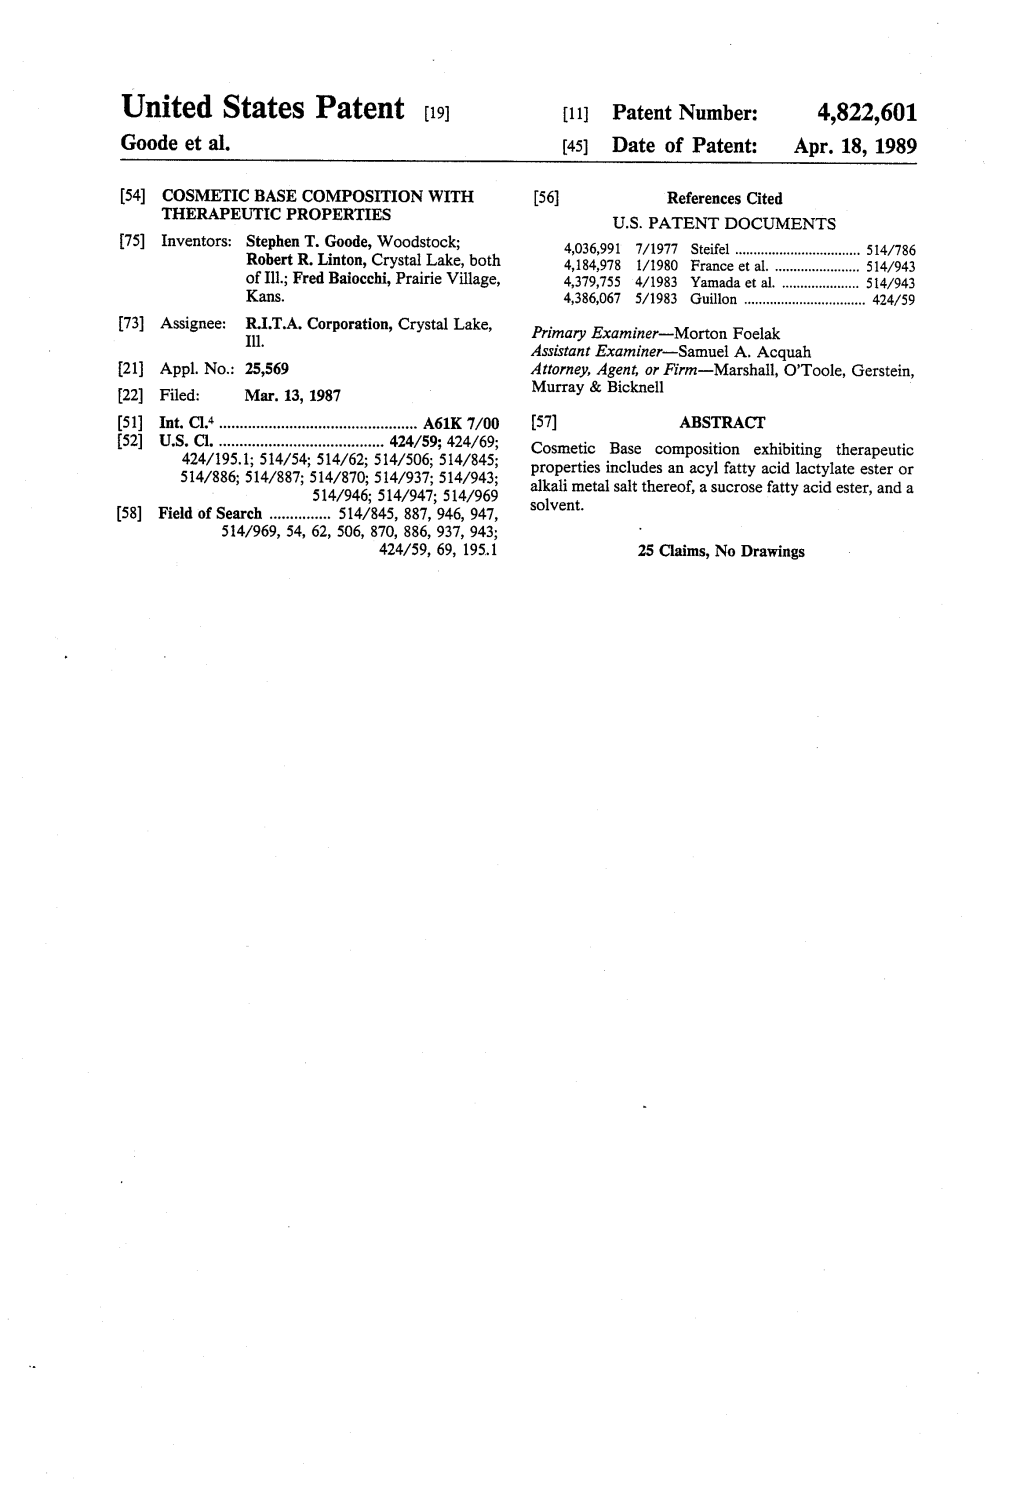 United States Patent (19) 11 Patent Number: 4,822,601 Goode Et Al